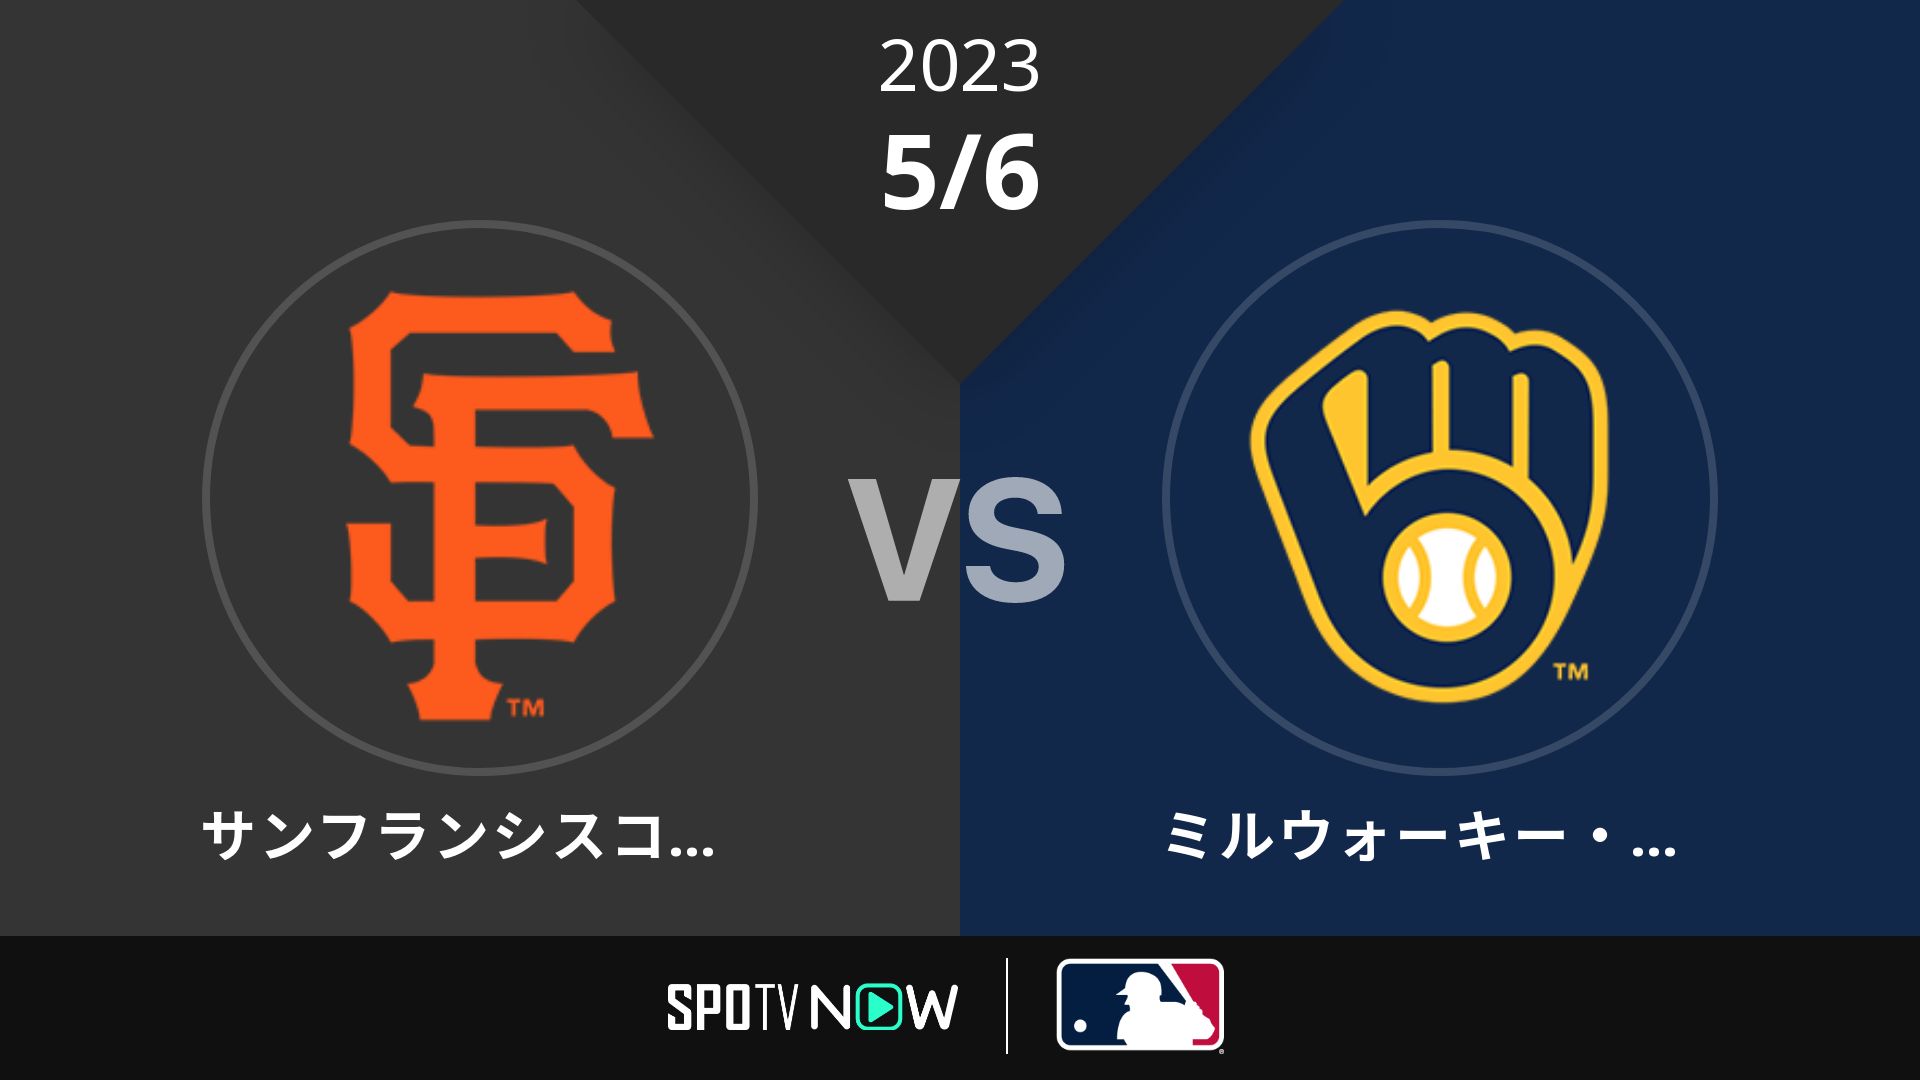 2023/5/6 ジャイアンツ vs ブリュワーズ [MLB]